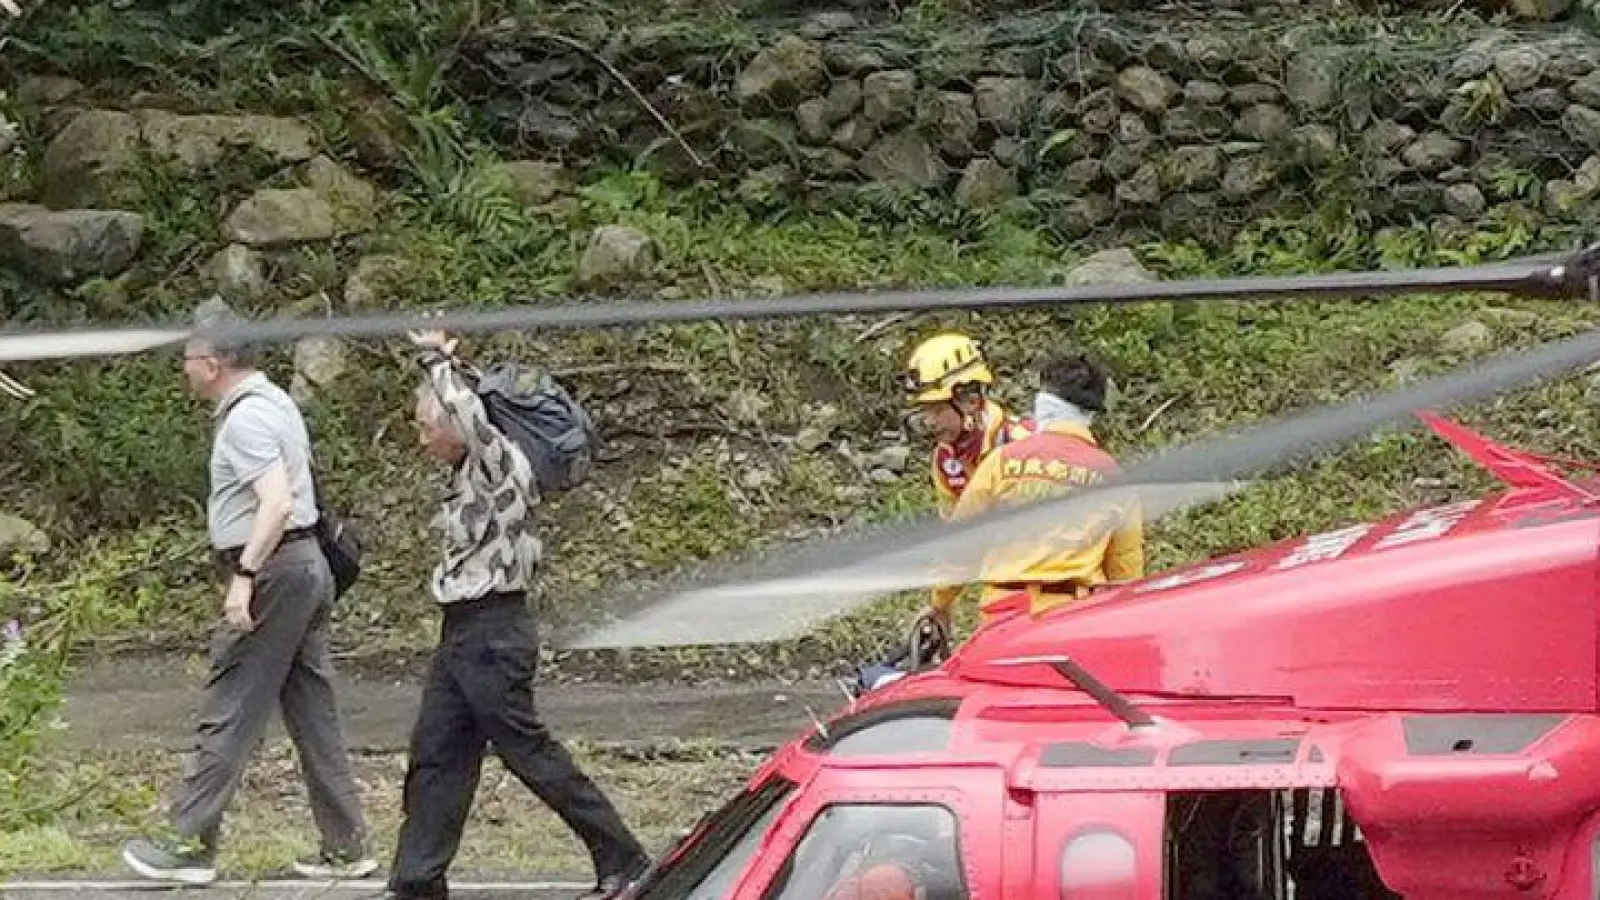 Menschen, die noch nach dem Erdbeben am 3. April im Taroko-Nationalpark festsaßen, konnten gerettet werden und verlassen in Begleitung von Rettungskräften den Hubschrauber. (Foto: -/kyodo/dpa)